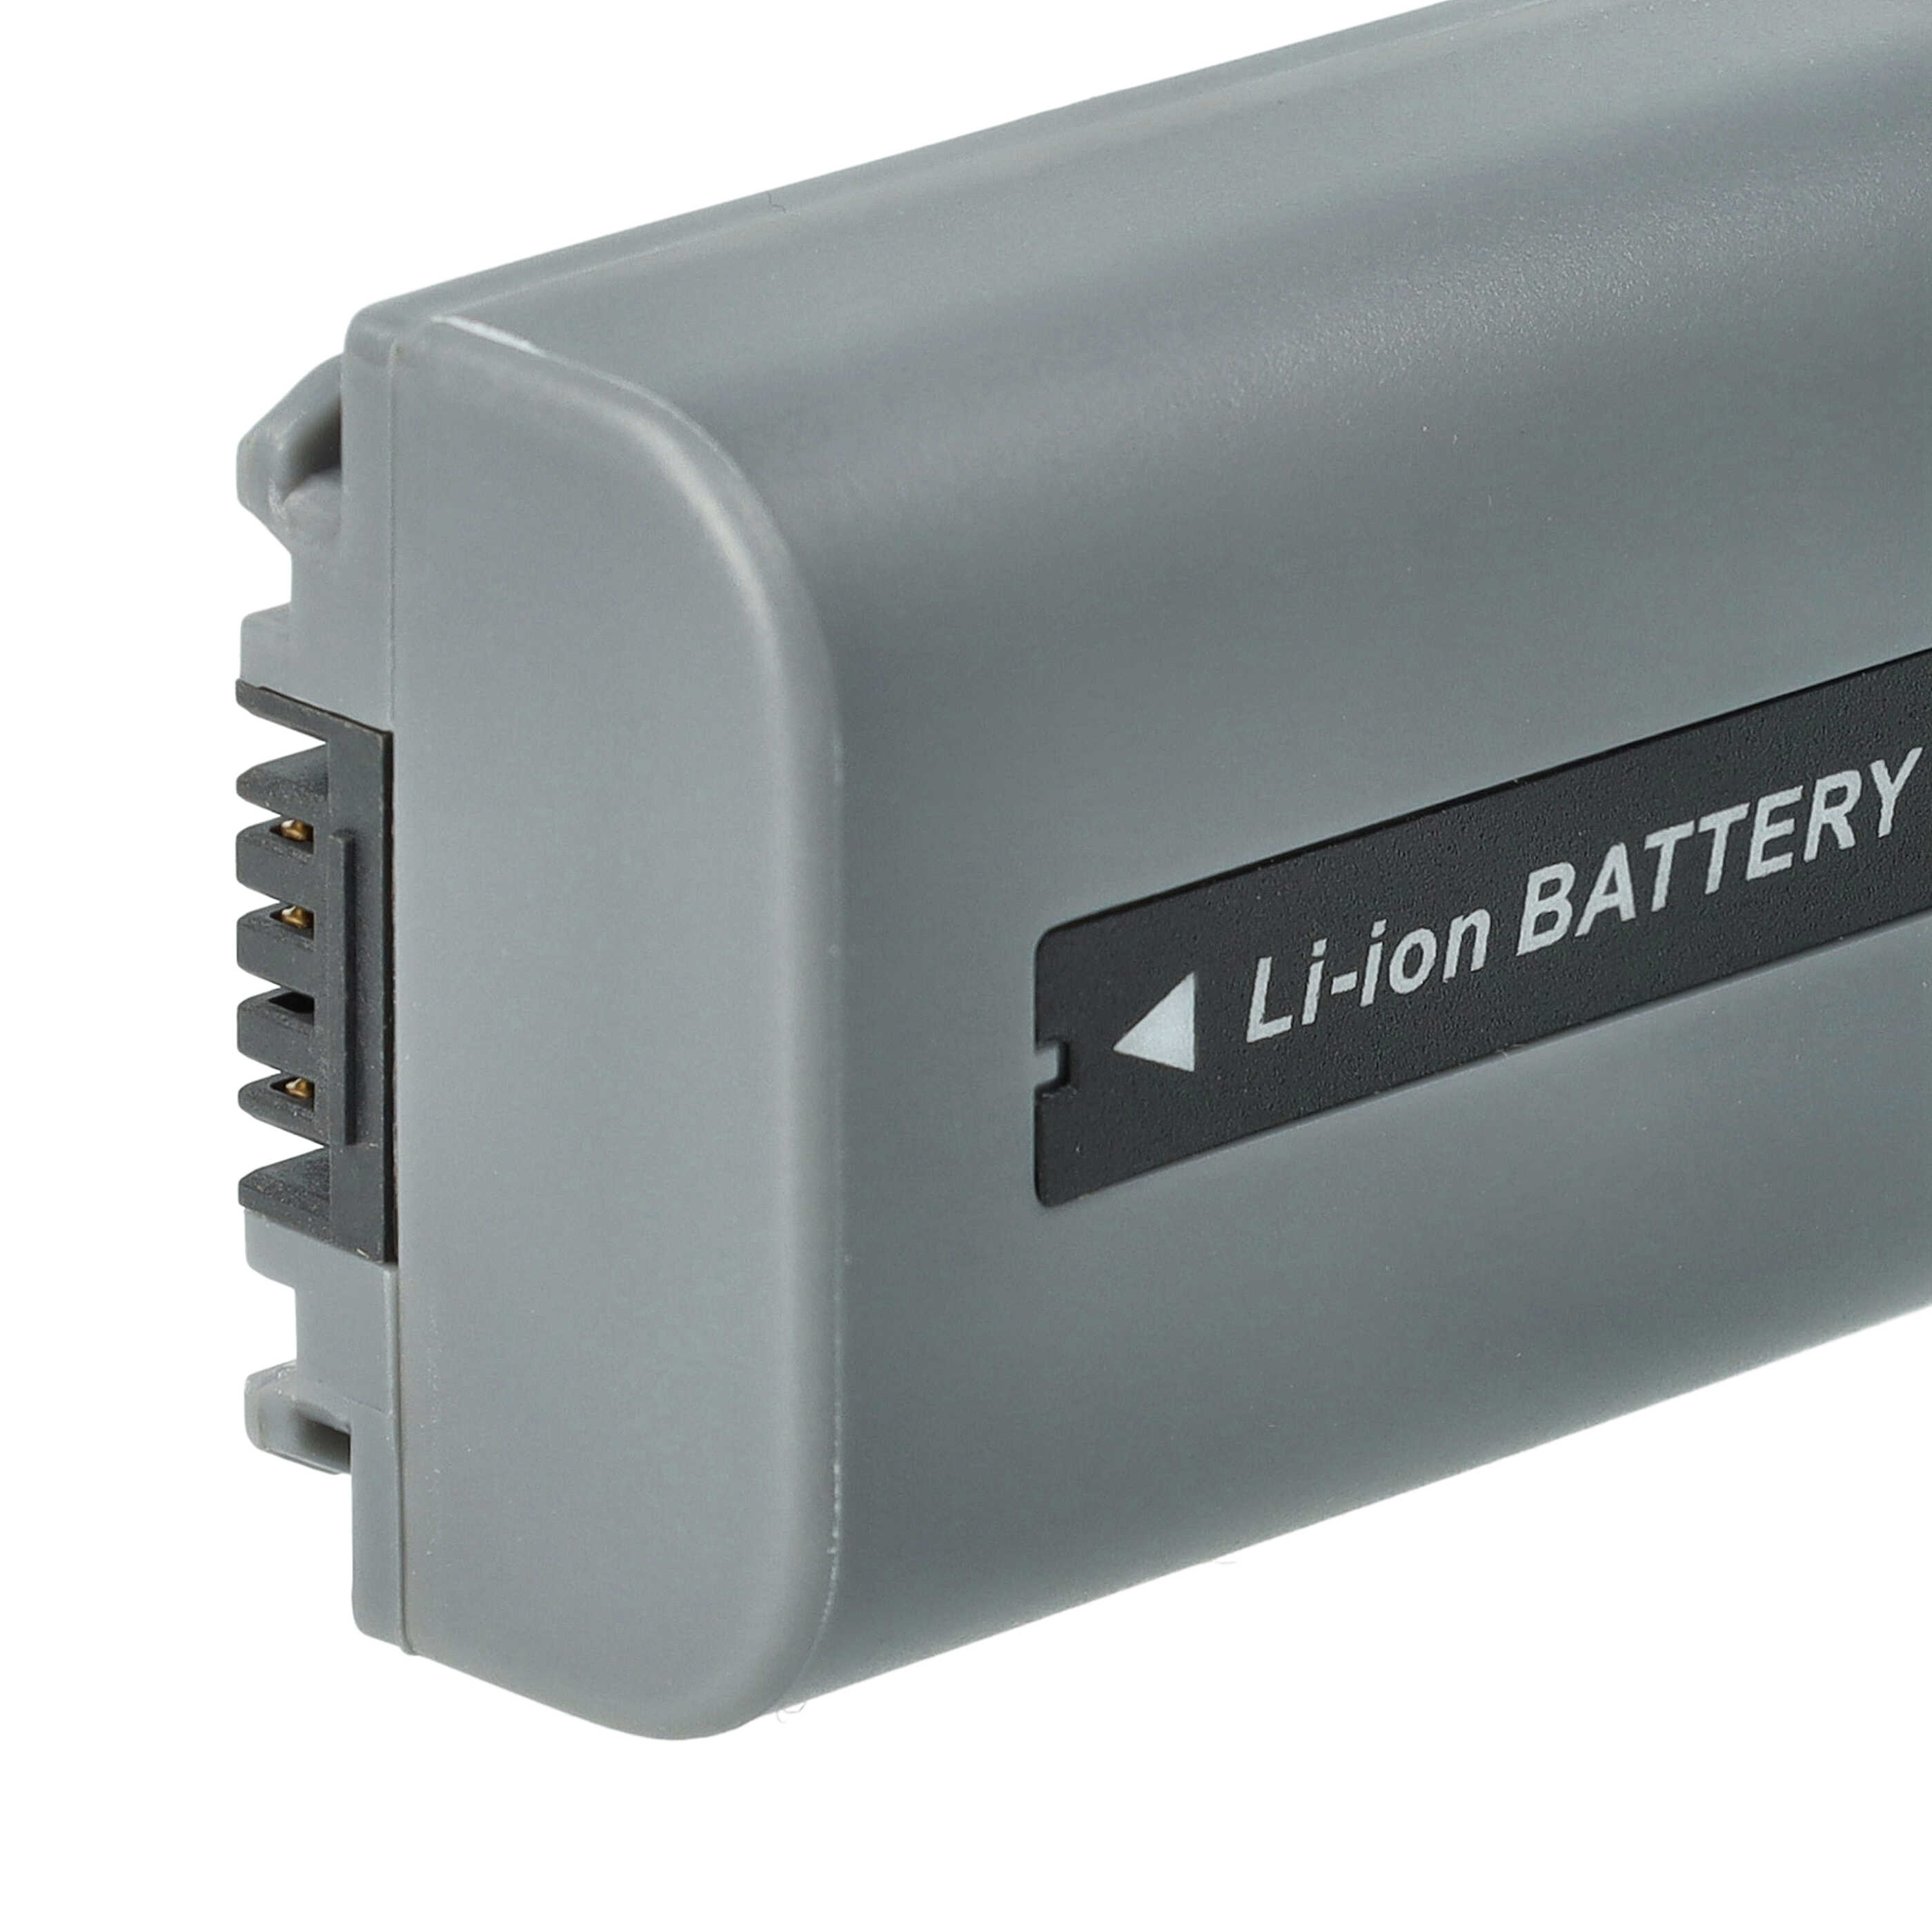 Batterie remplace Sony NP-FP50, NP-FP30, NP-FP60, NP-FP51, NP-FP70 pour caméscope - 600mAh 7,2V Li-ion